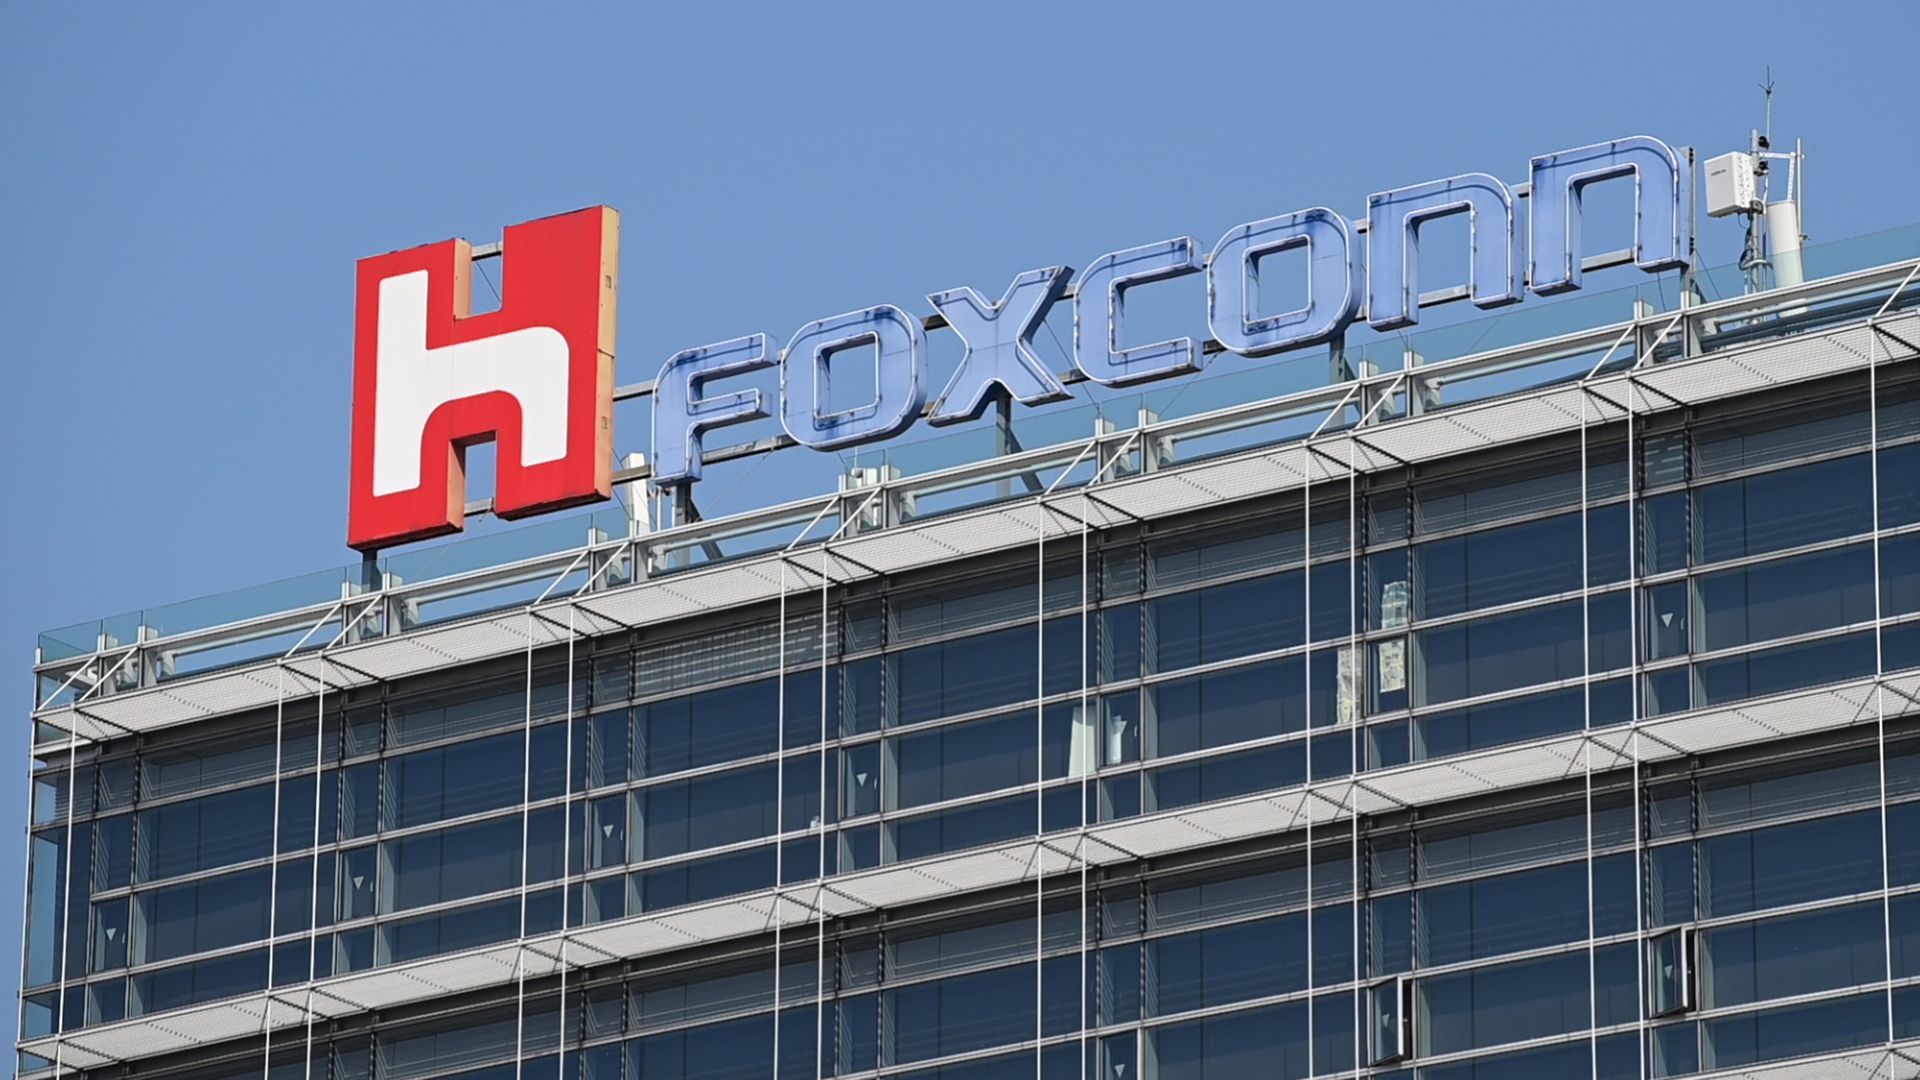 Foxconn chính thức mở nhà máy tại Việt Nam, quy mô 10 hecta, phí đầu tư 26 triệu USD